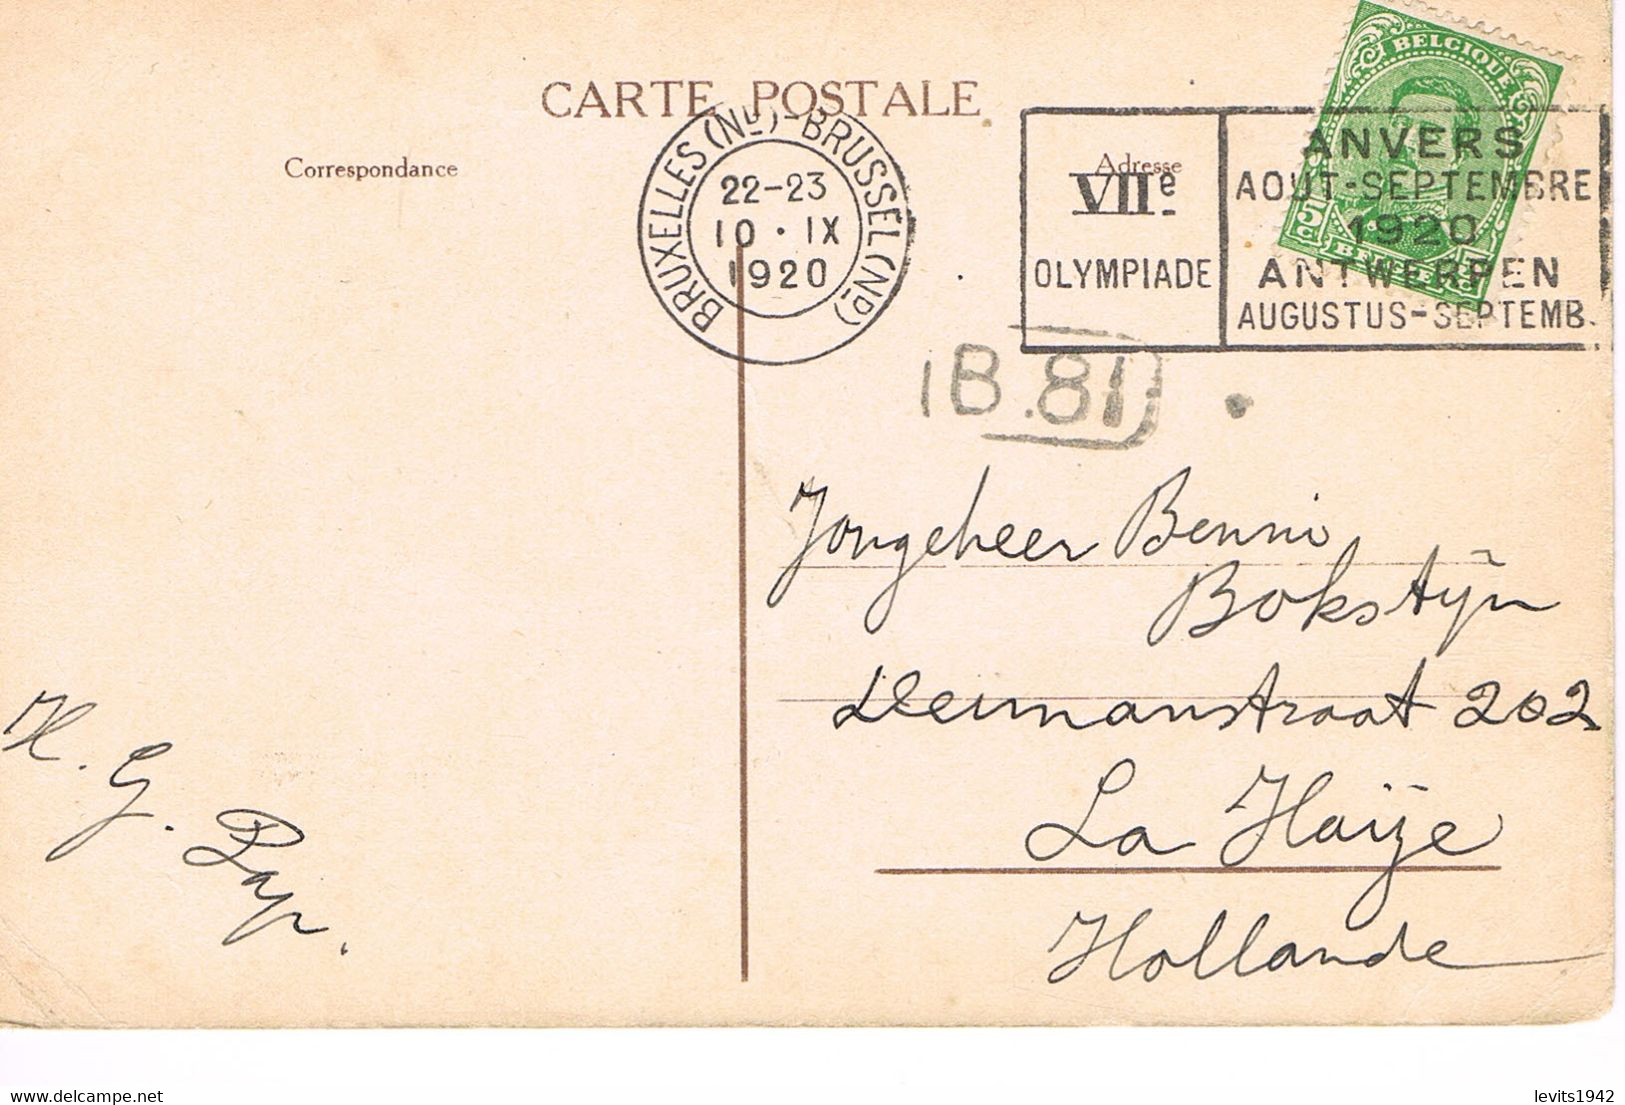 JEUX OLYMPIQUES 1920 - MARQUE POSTALE - BRUXELLES - 10 - IX - JOUR DE COMPETITION - EQUITATION - Estate 1920: Anversa